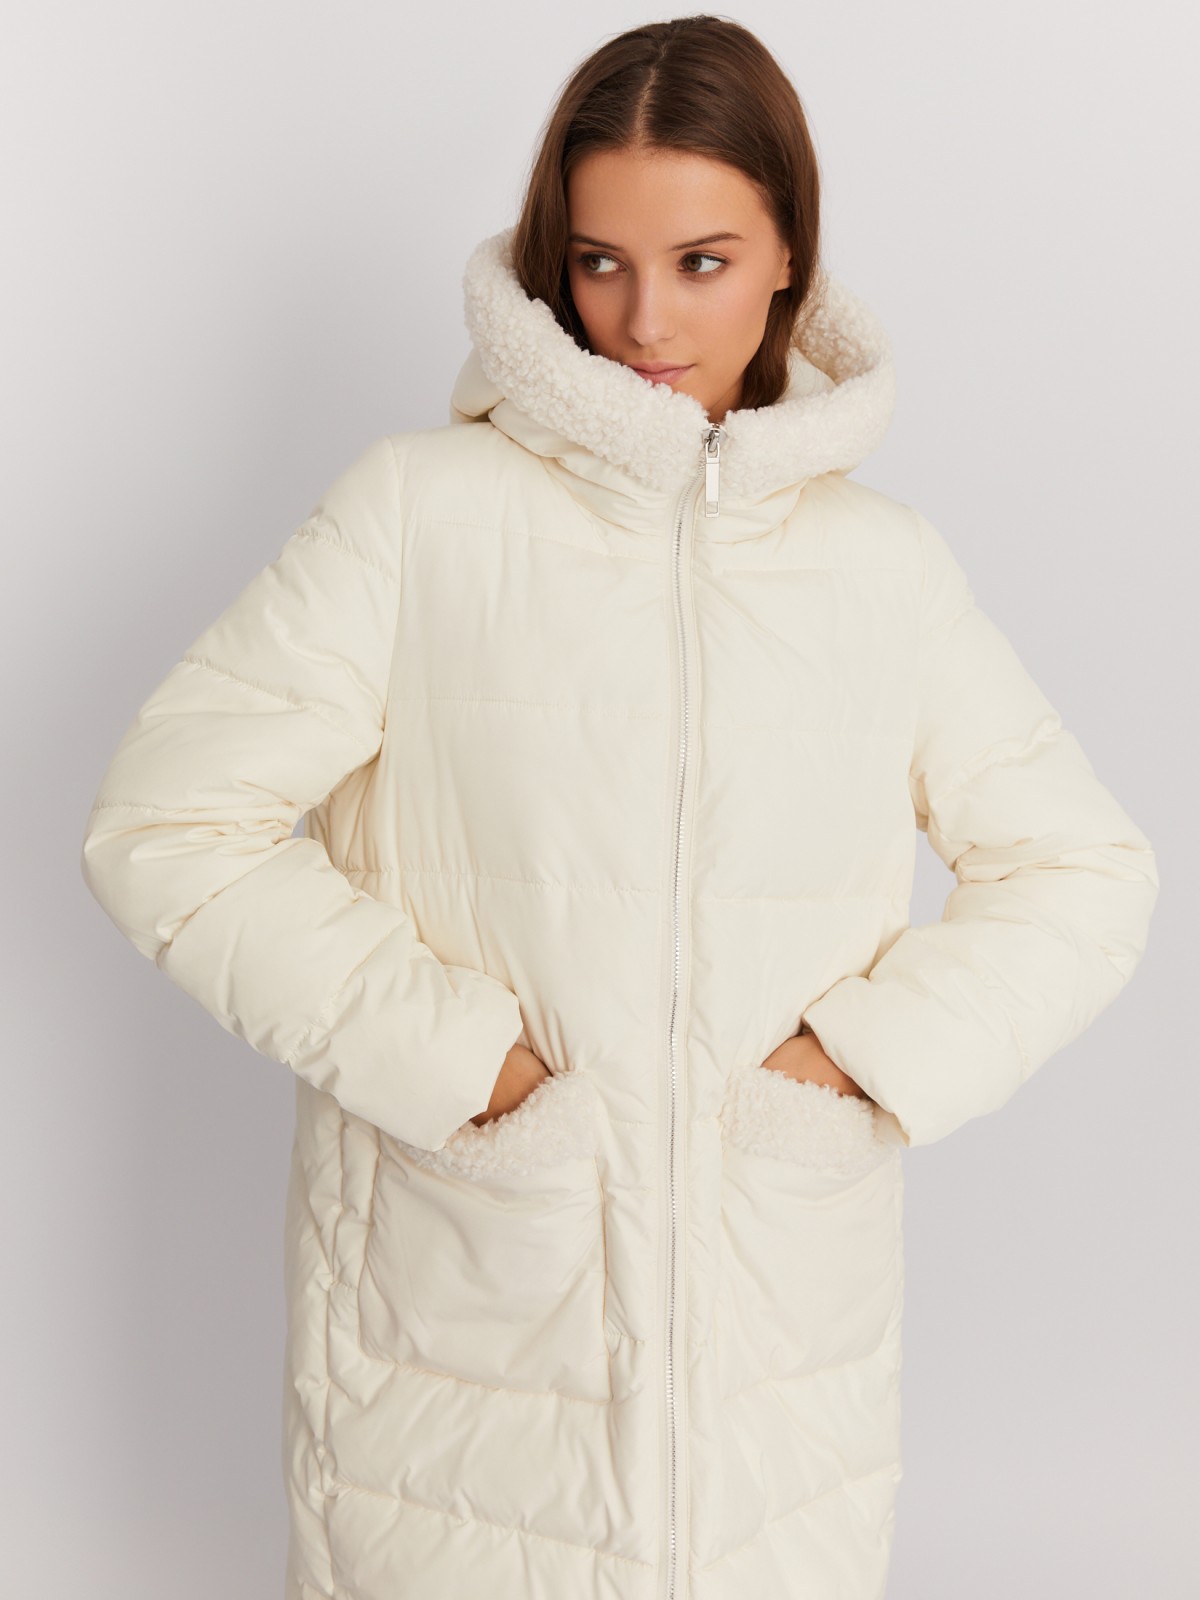 Тёплая куртка-пальто с капюшоном и отделкой из экомеха zolla 022425276044, цвет молоко, размер M - фото 2